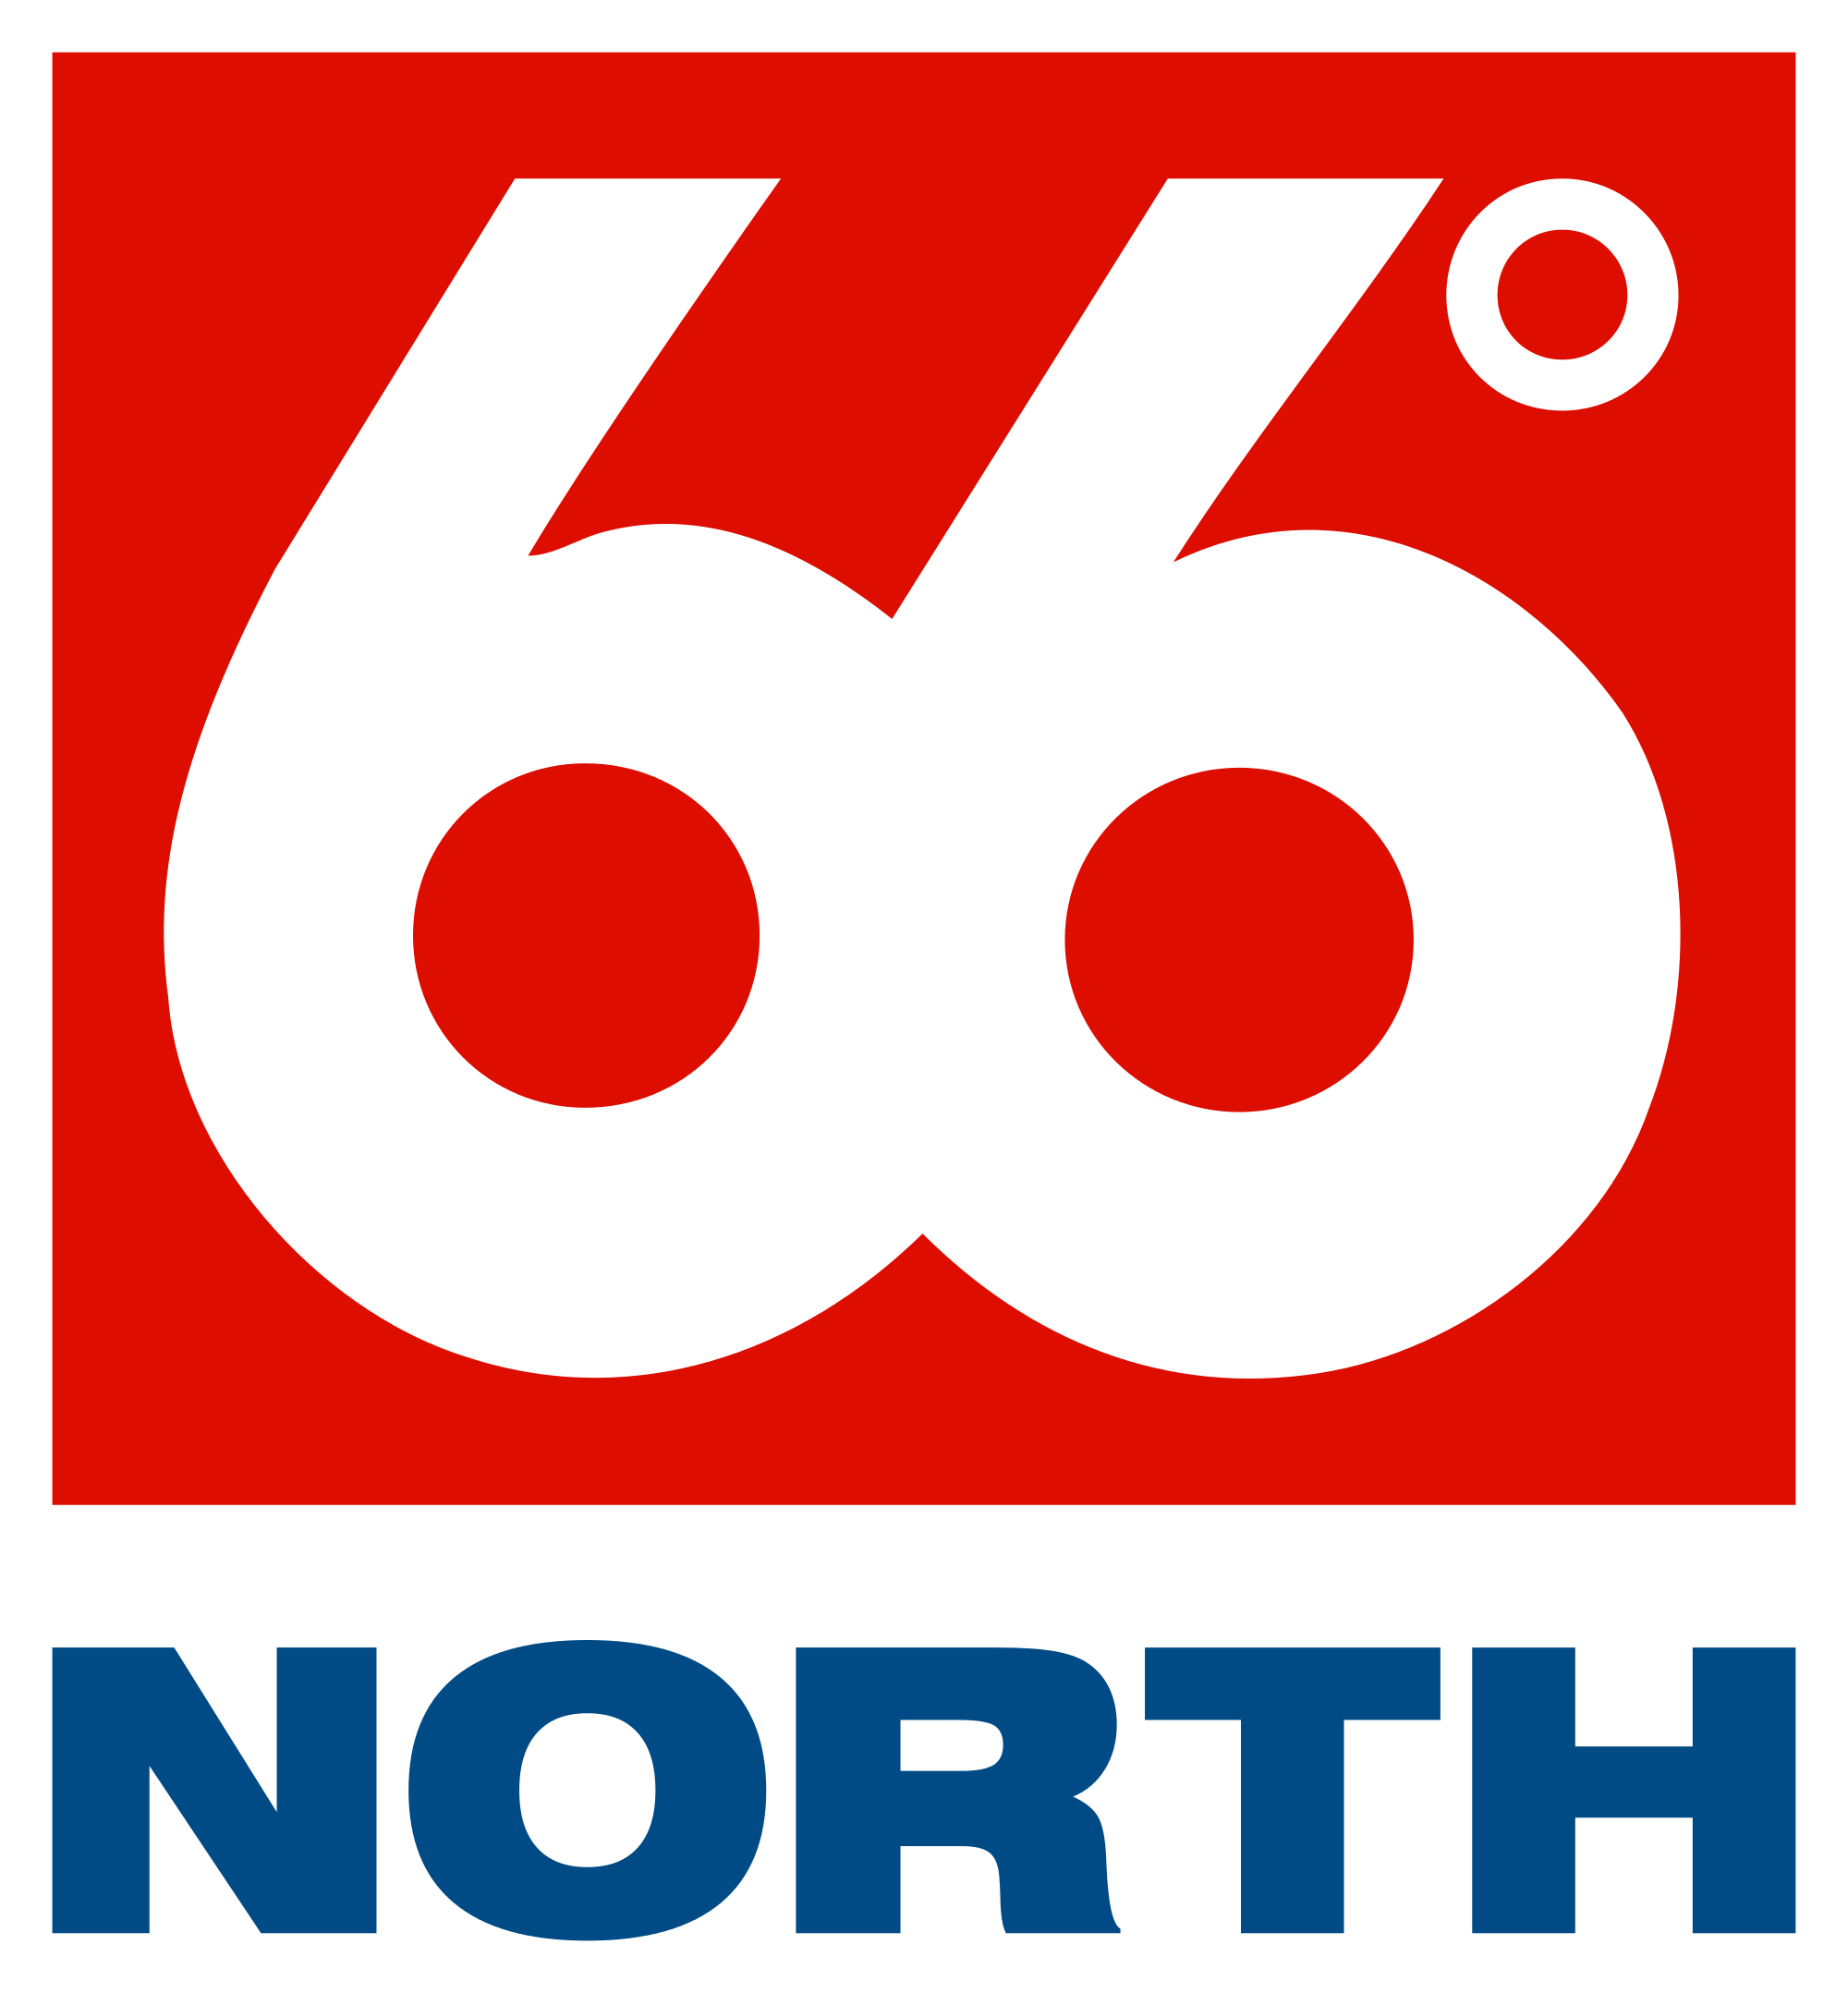 66North